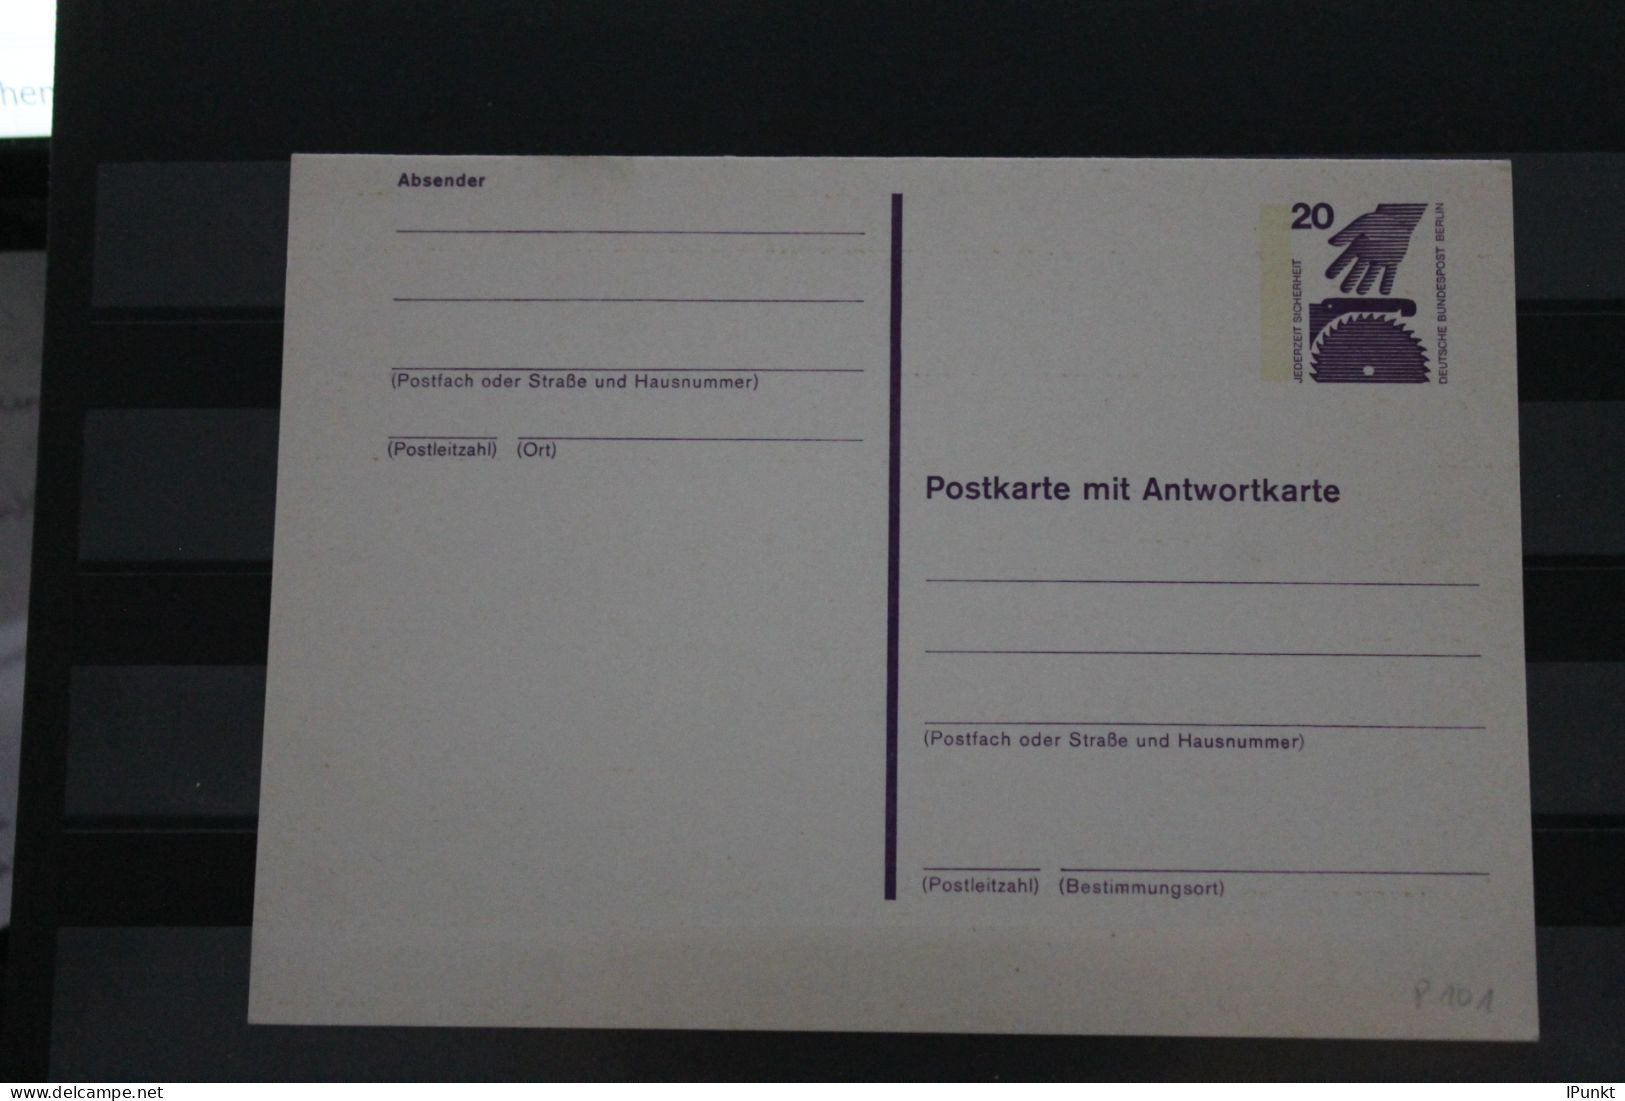 Berlin 1975; Ganzsache Unfallverhütung Postkarte Mit Antwortkarte  P 101; Ungebraucht - Postcards - Mint